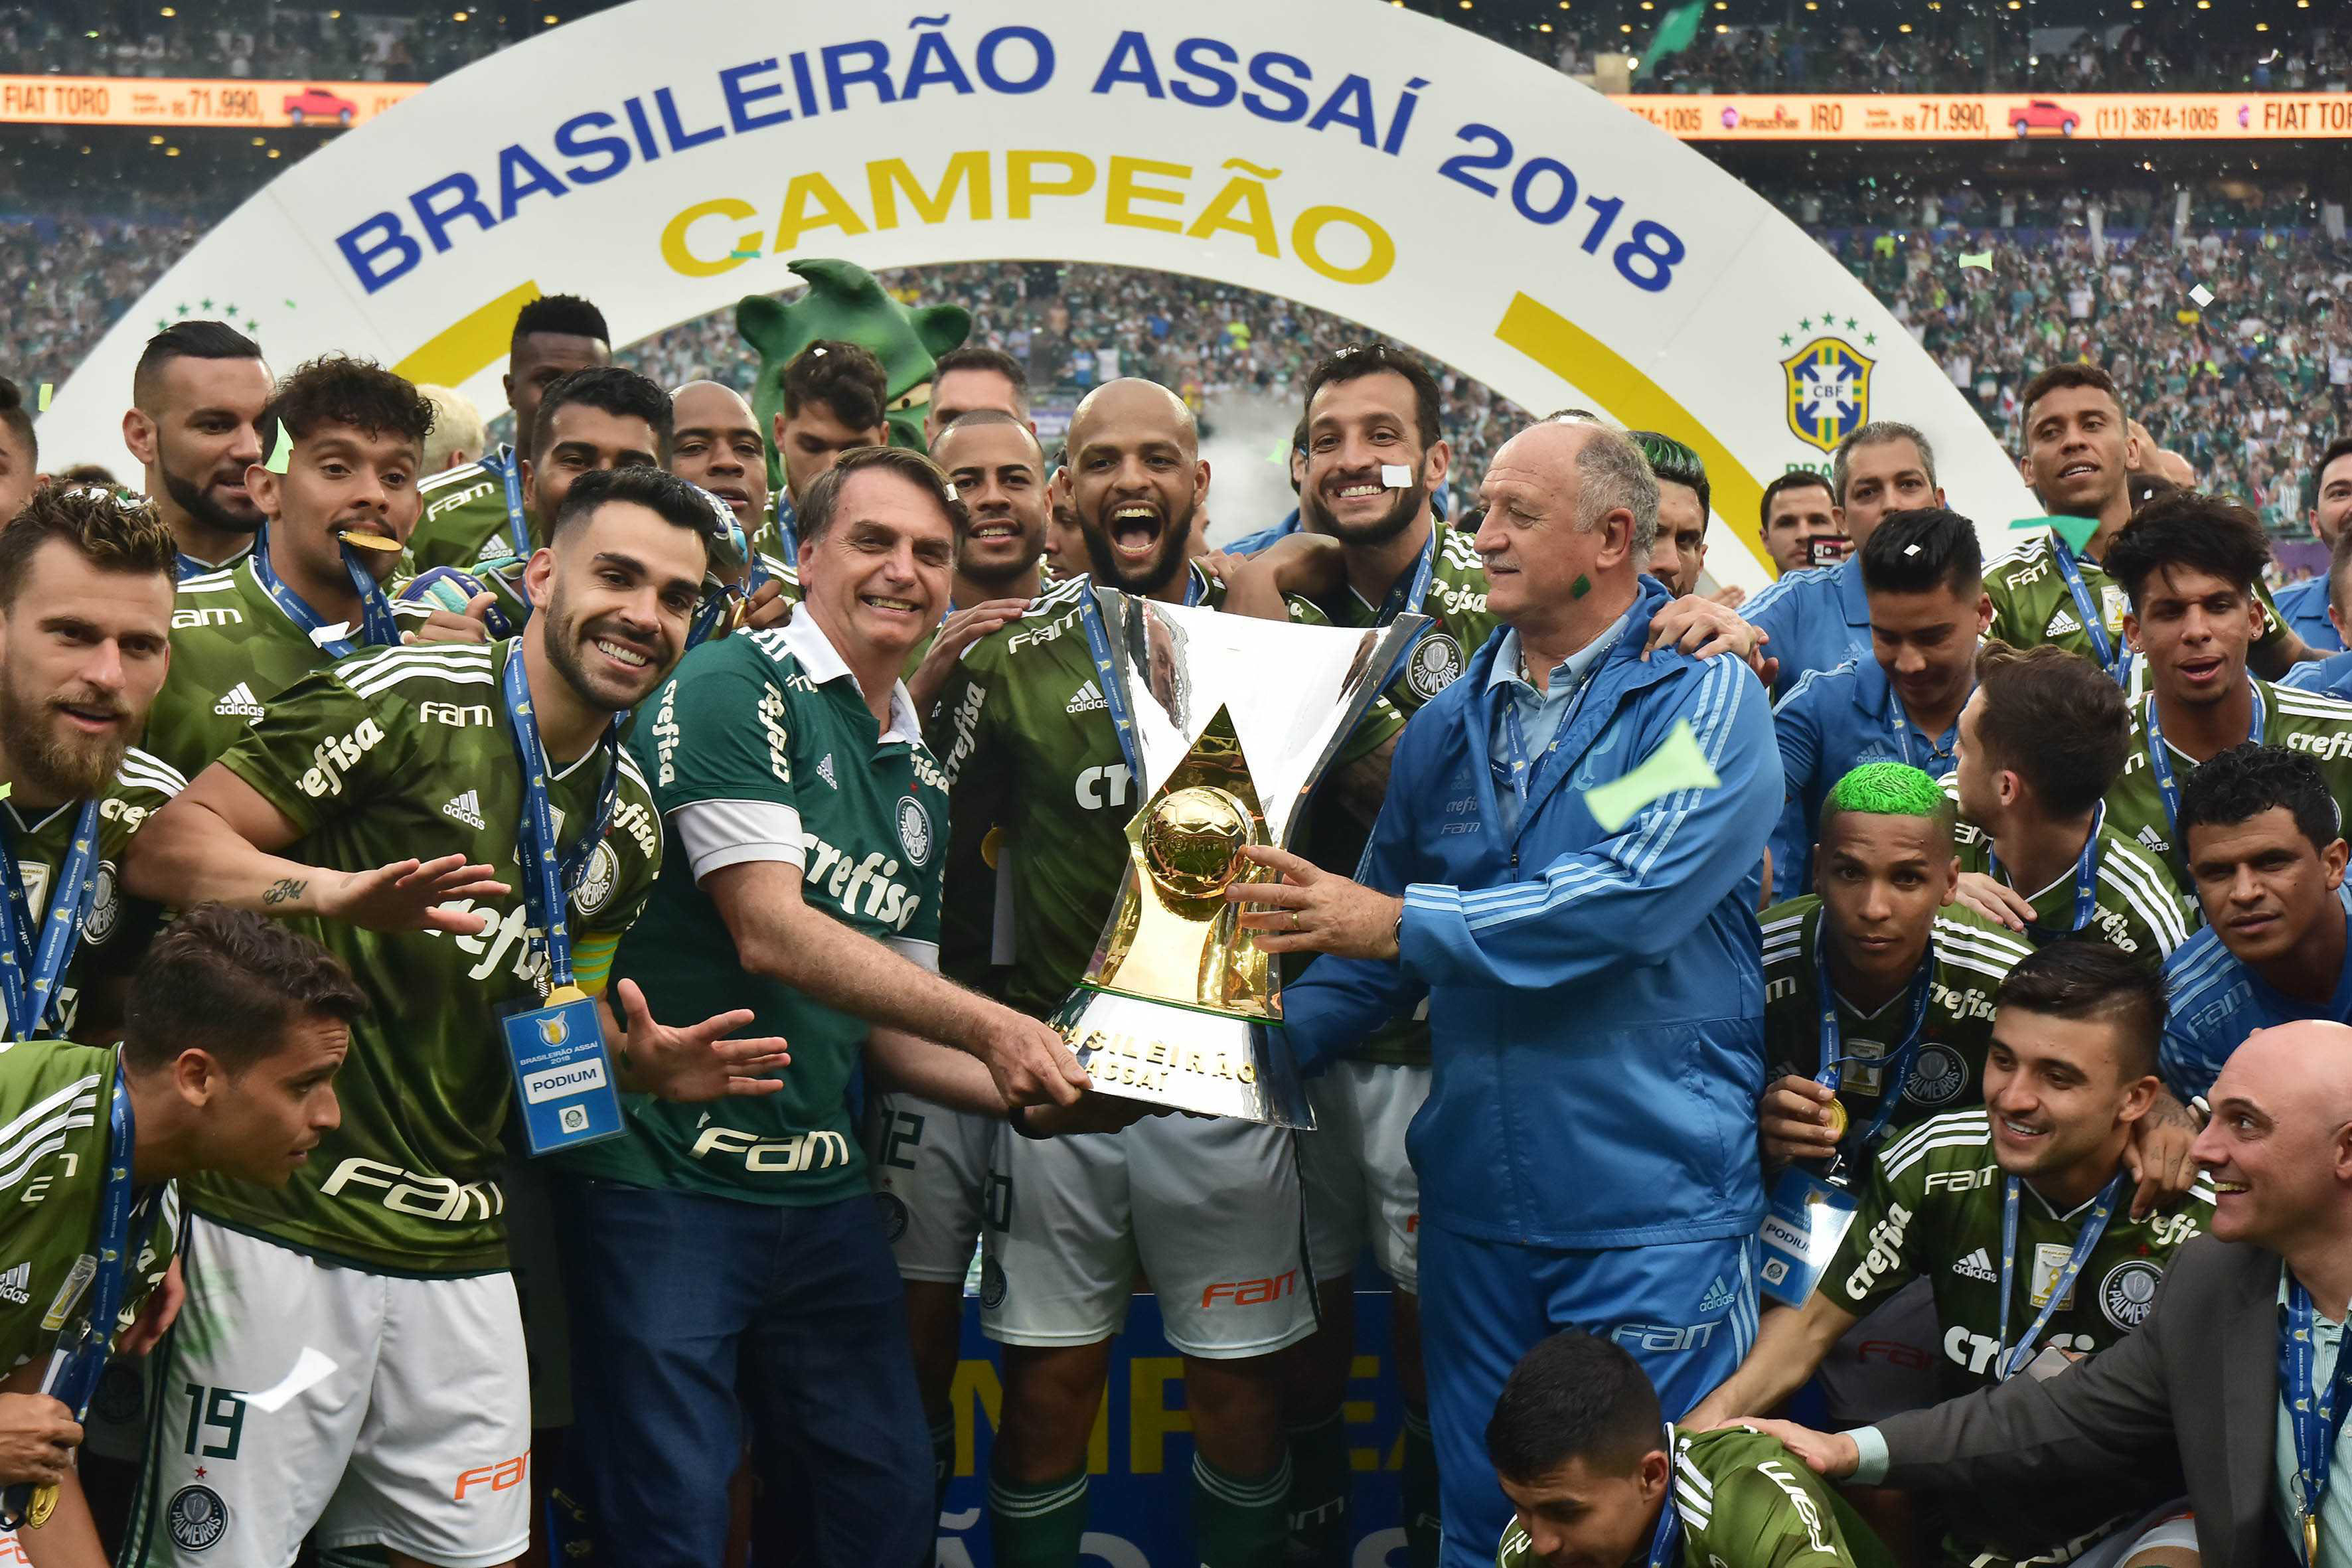 Palmeiras assume a liderança do ranking de clubes da CBF